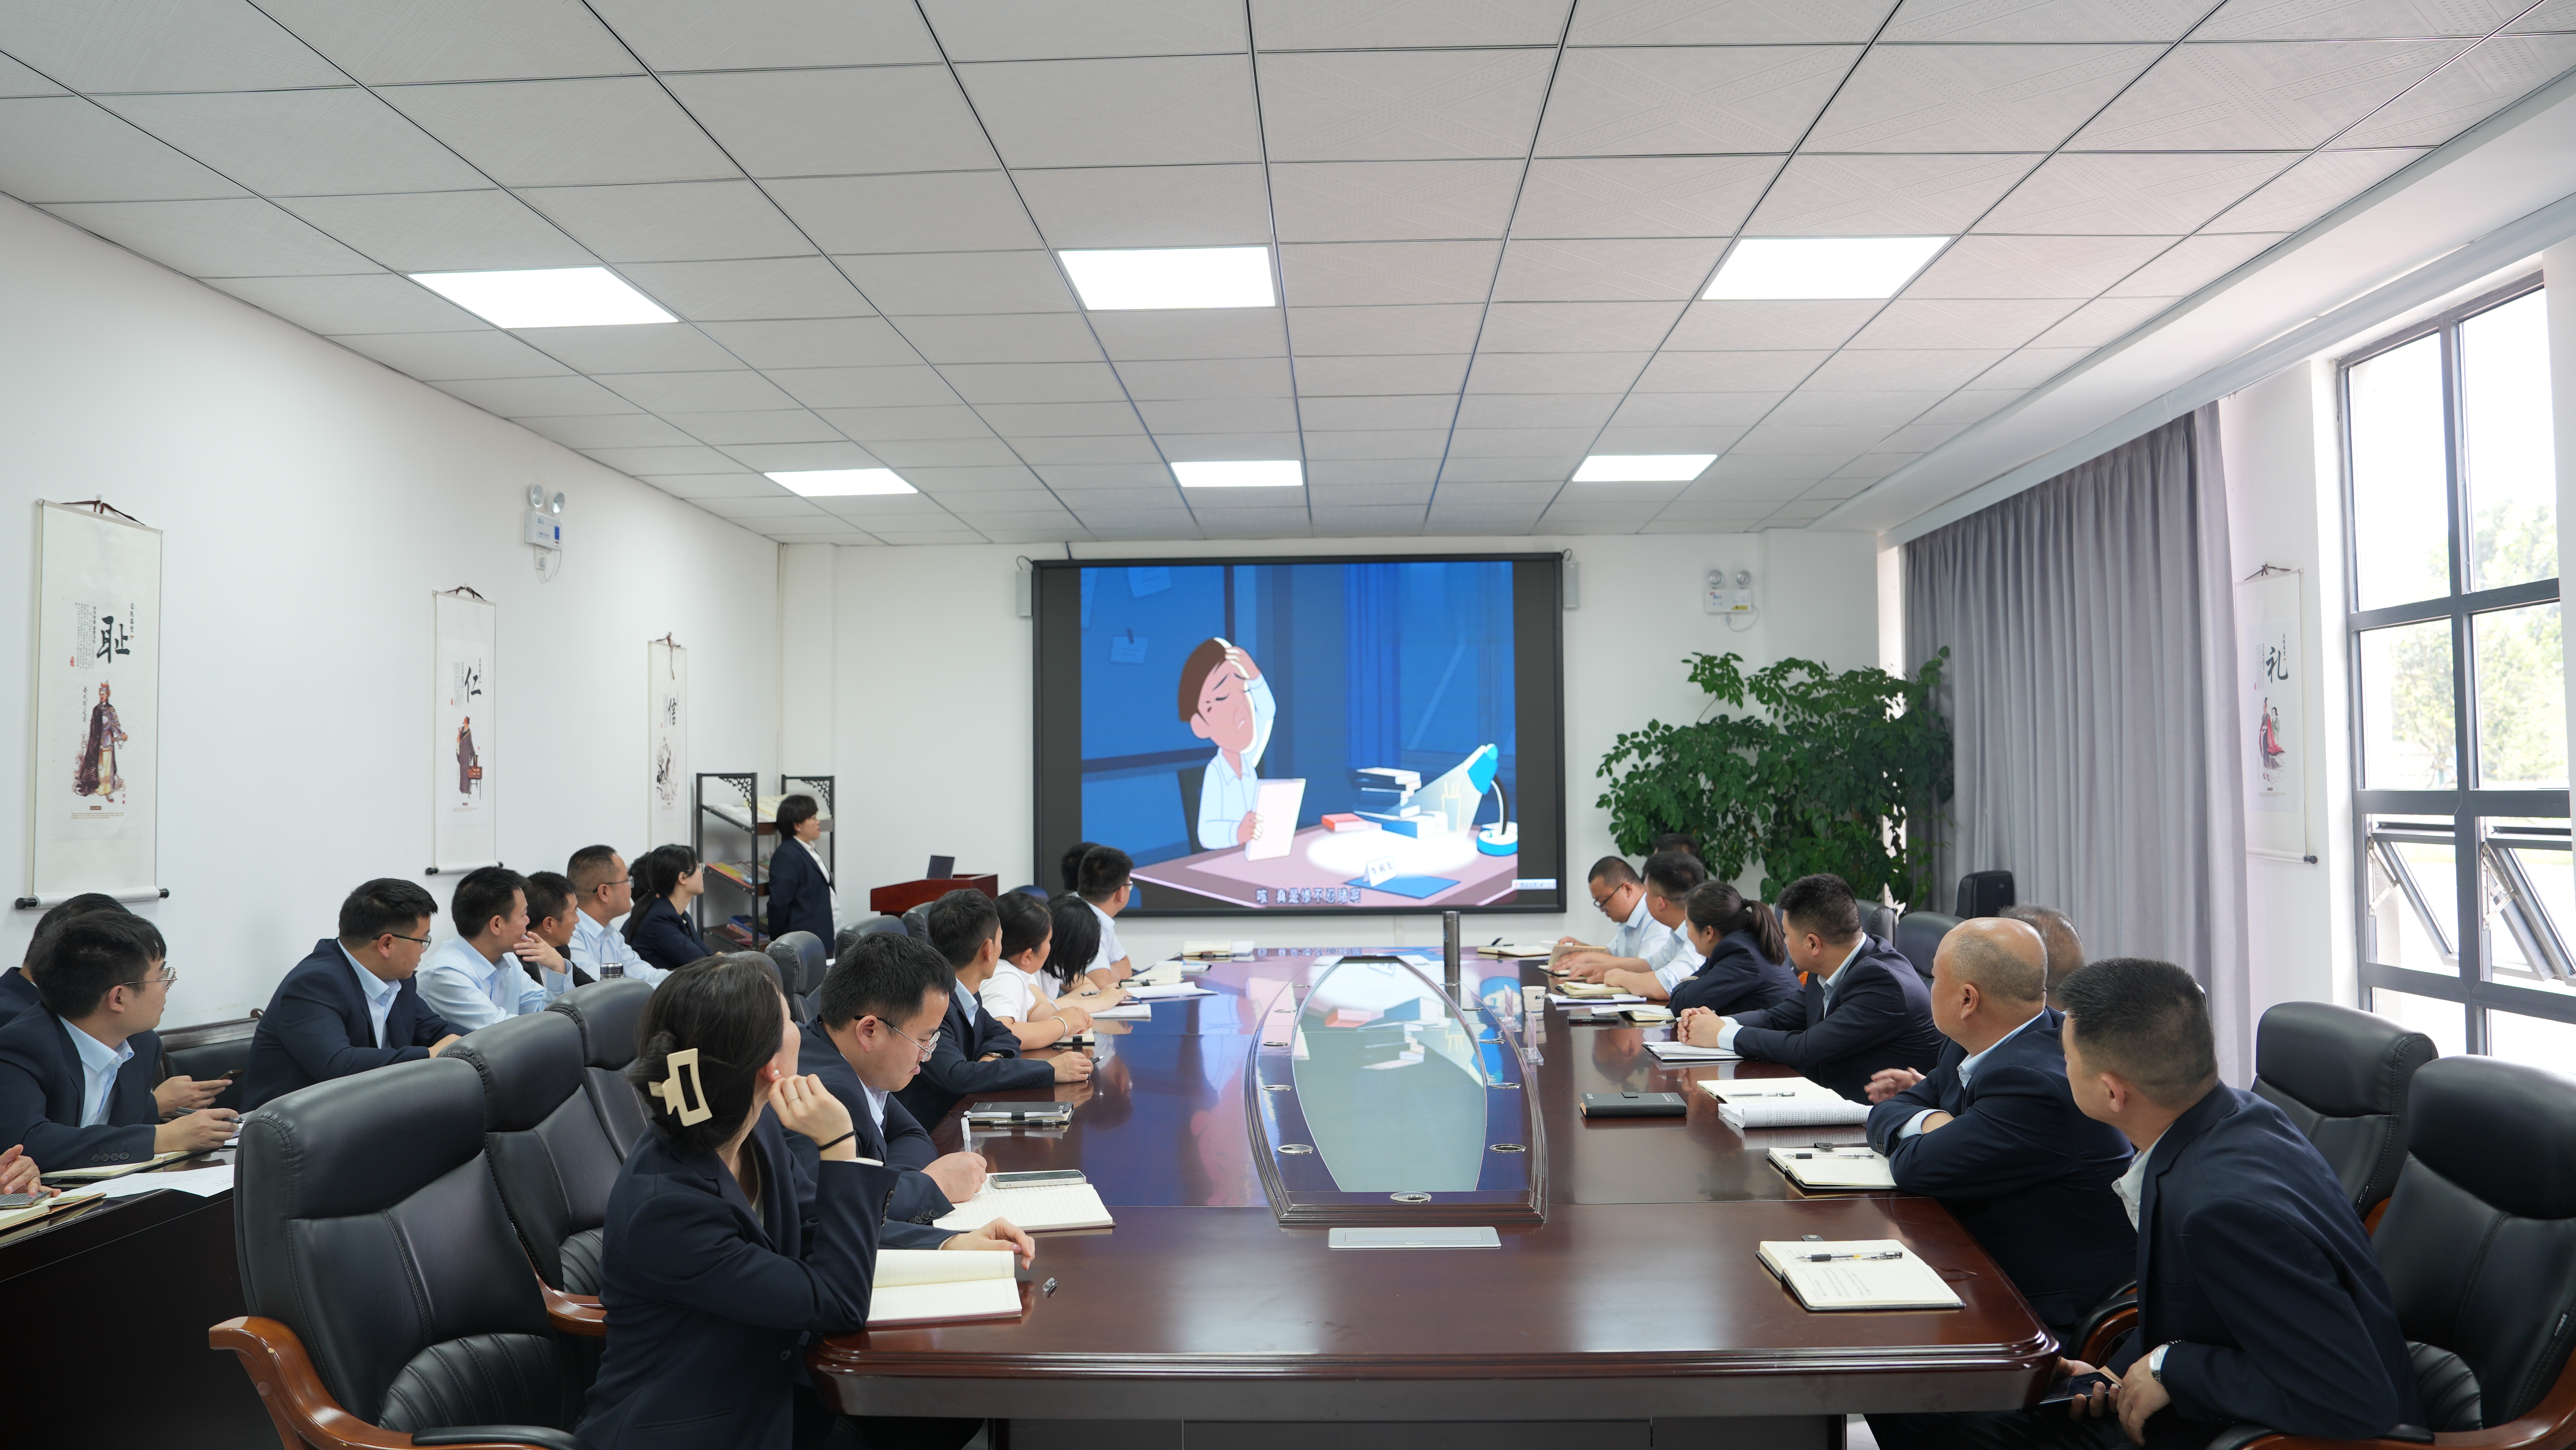 2023年5月16日在胜道公司会议室开展观看《违反档案法》的短视频活动.JPG